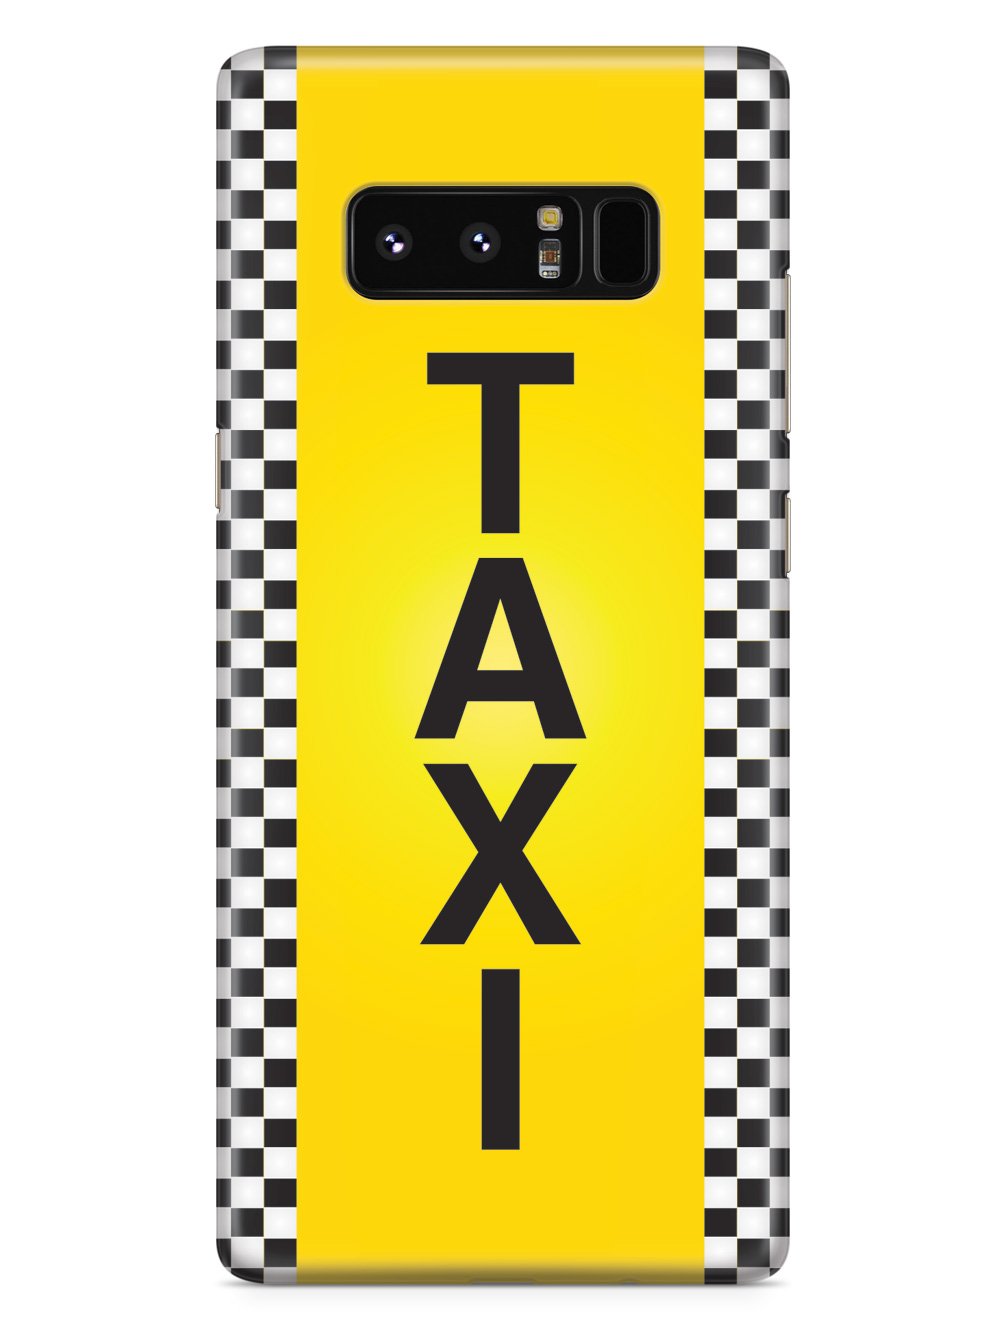 Taxi Cab Case